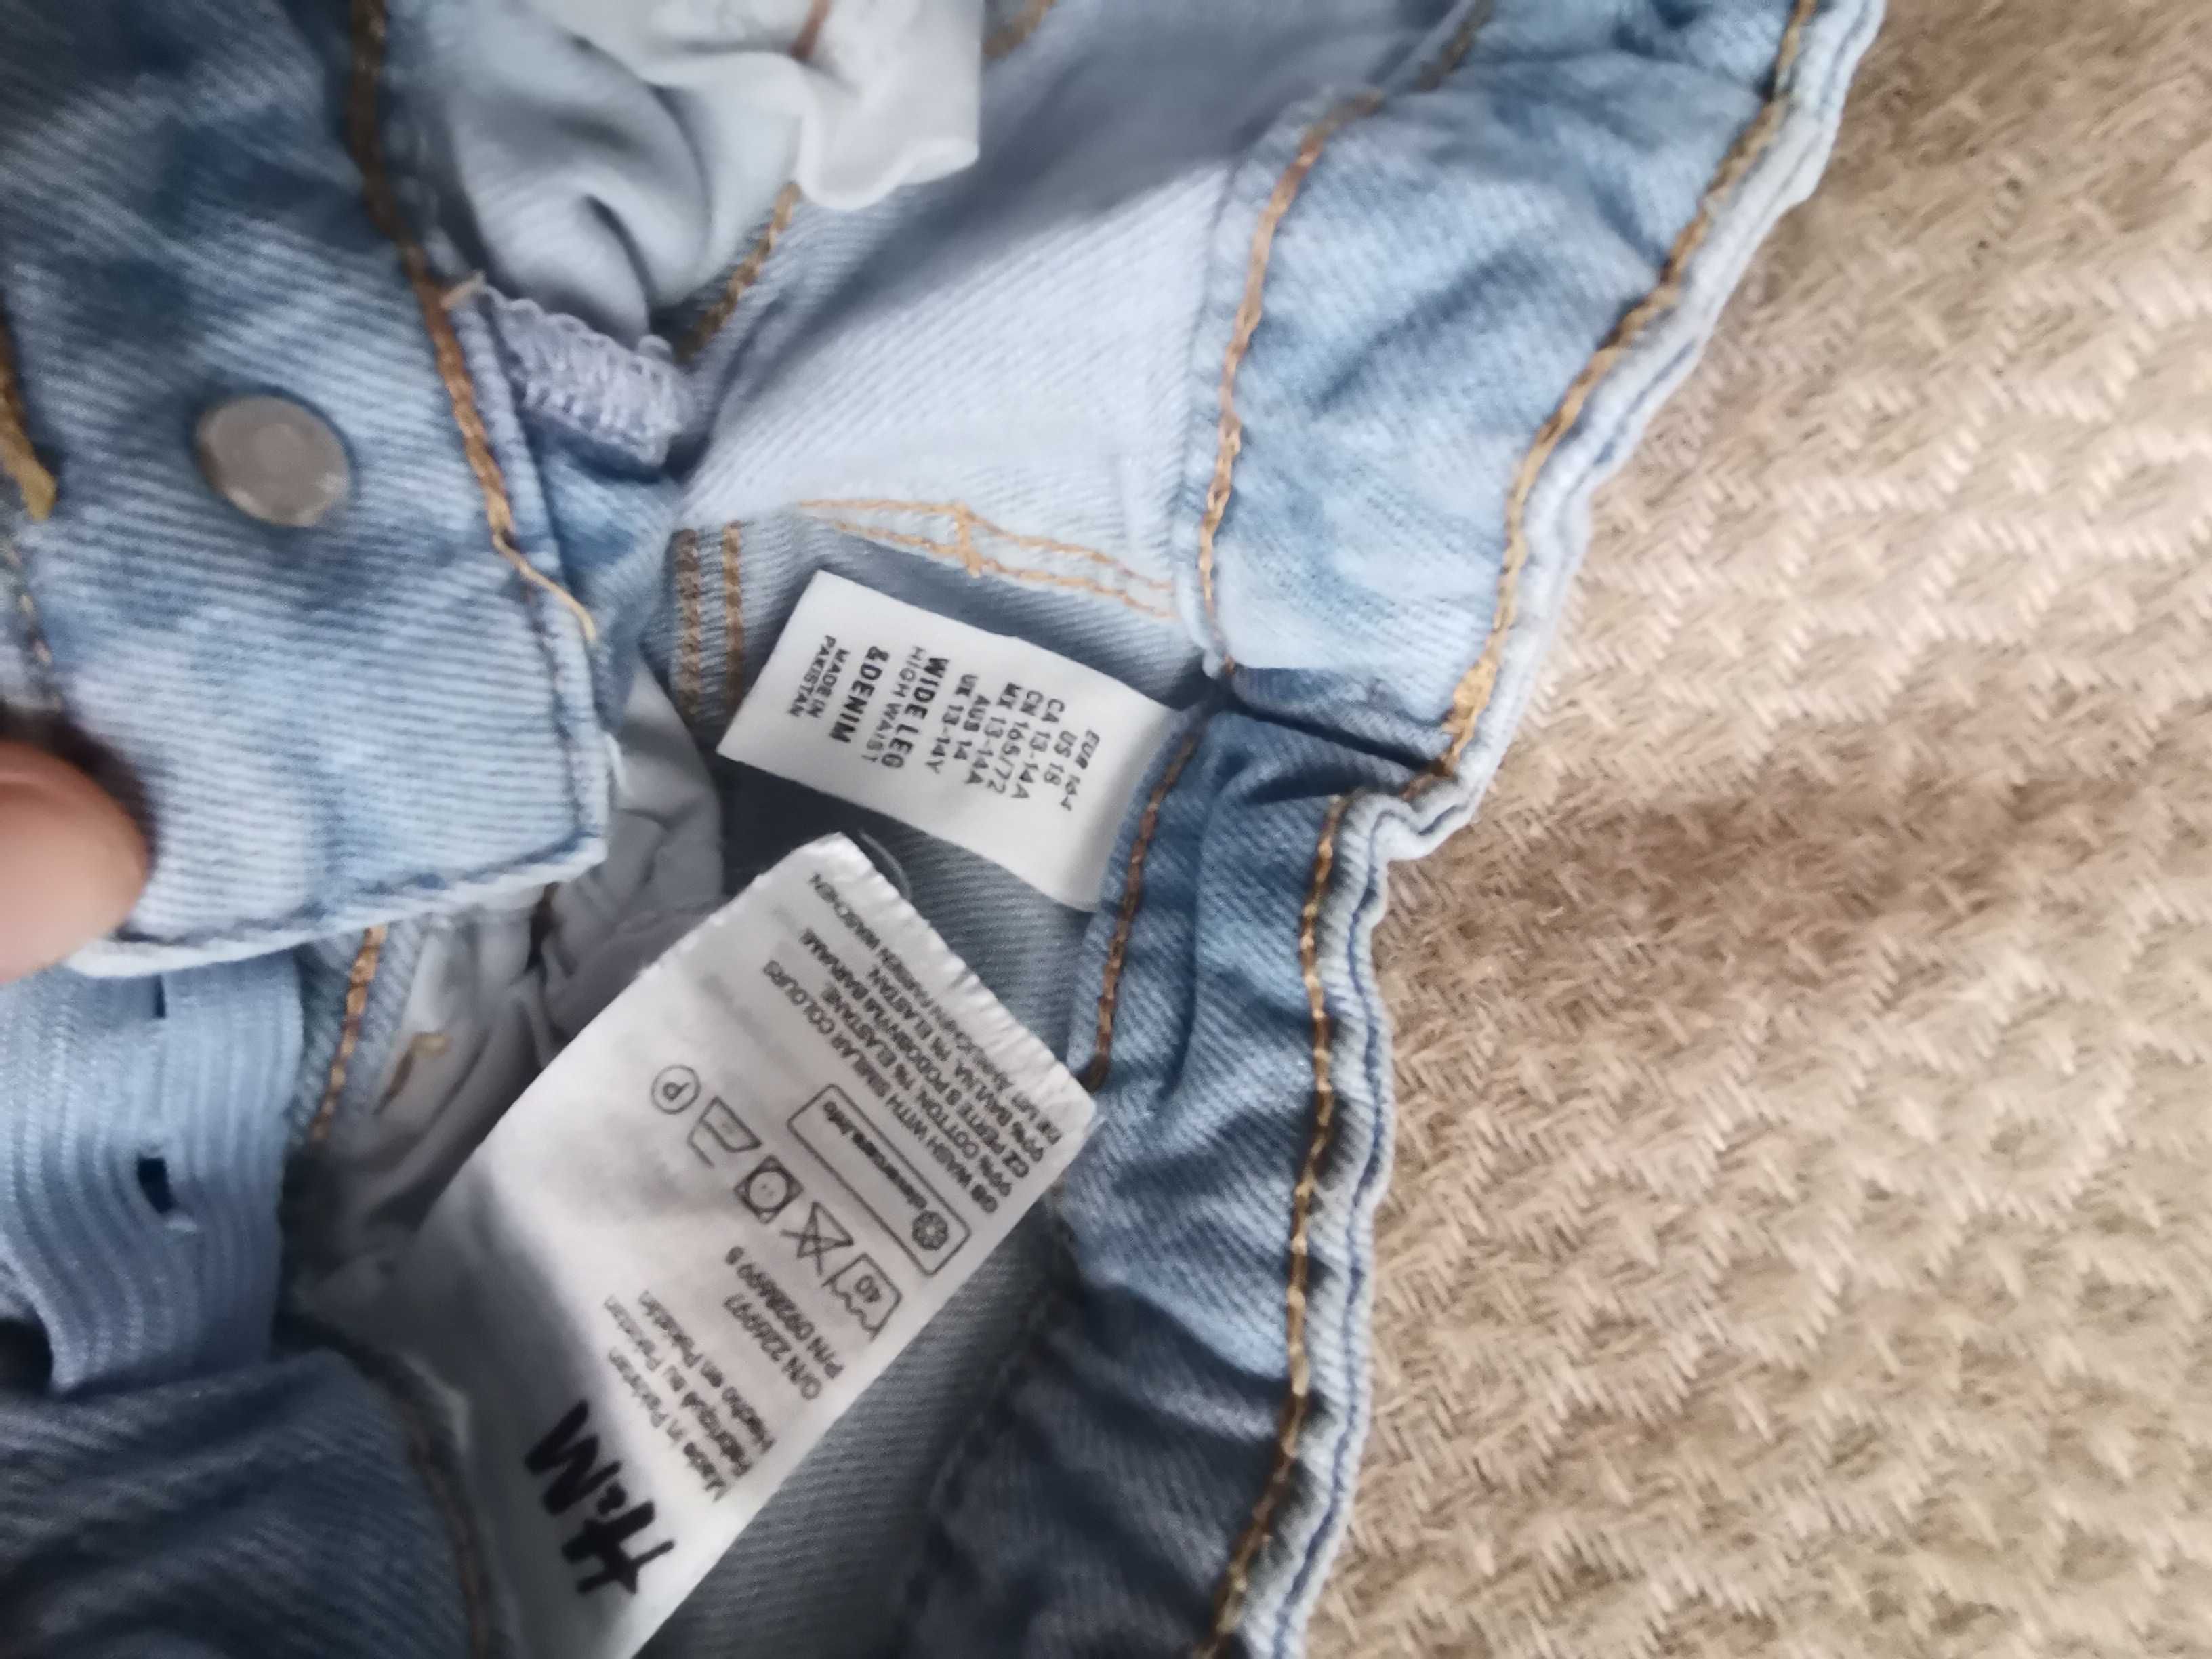 Blugi / jeans fete H&M patchwork albaștri mărimea 164 13-14 ani